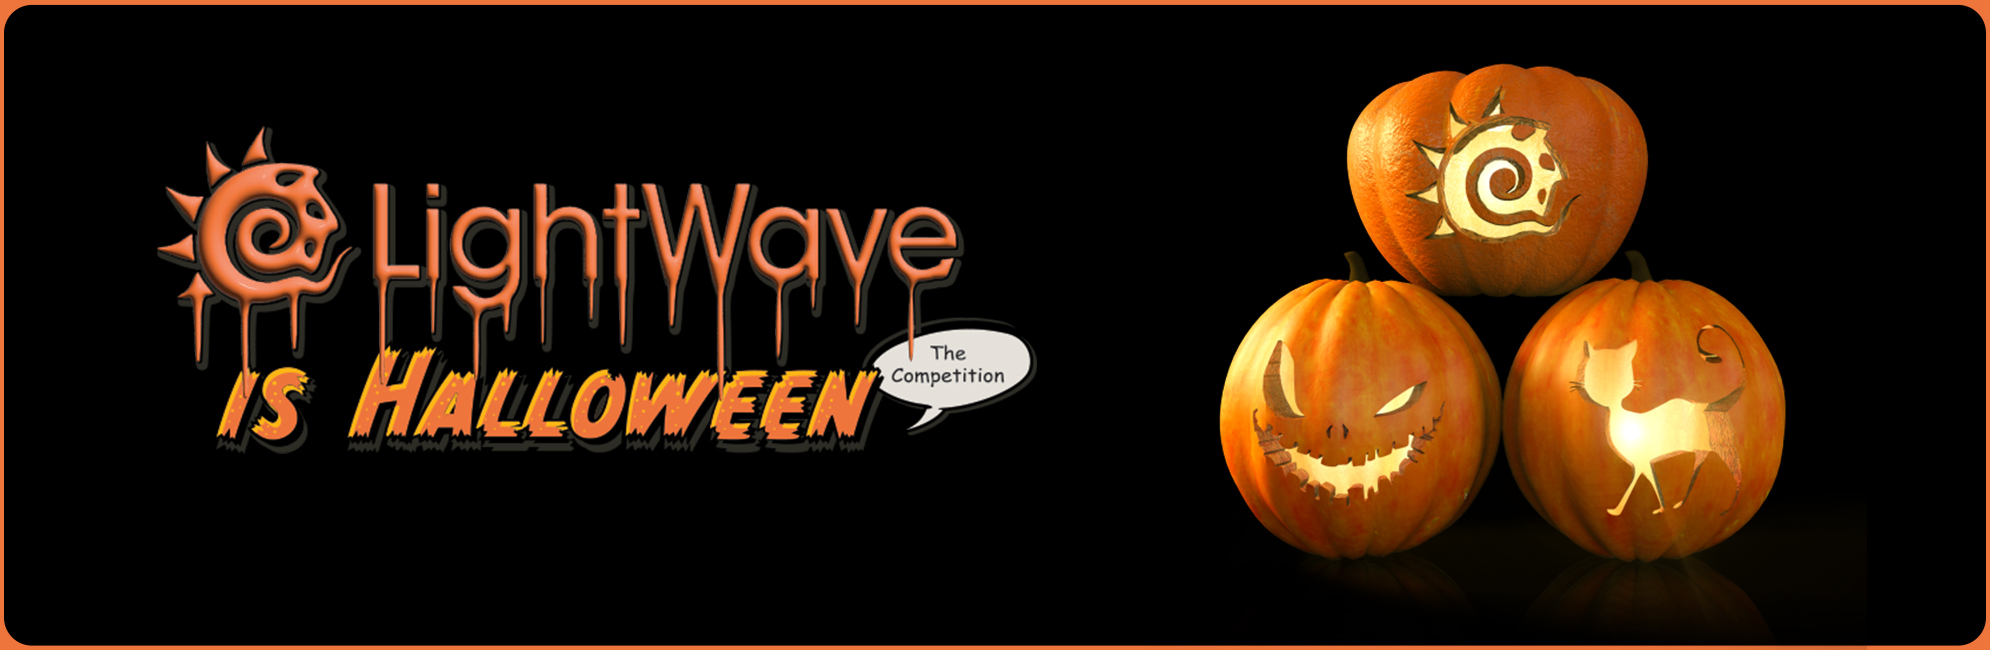 Nome: LightWave is Halloween  LightWave 3D Promo 20320918.jpg
Visite: 92
Dimensione: 387.4 KB